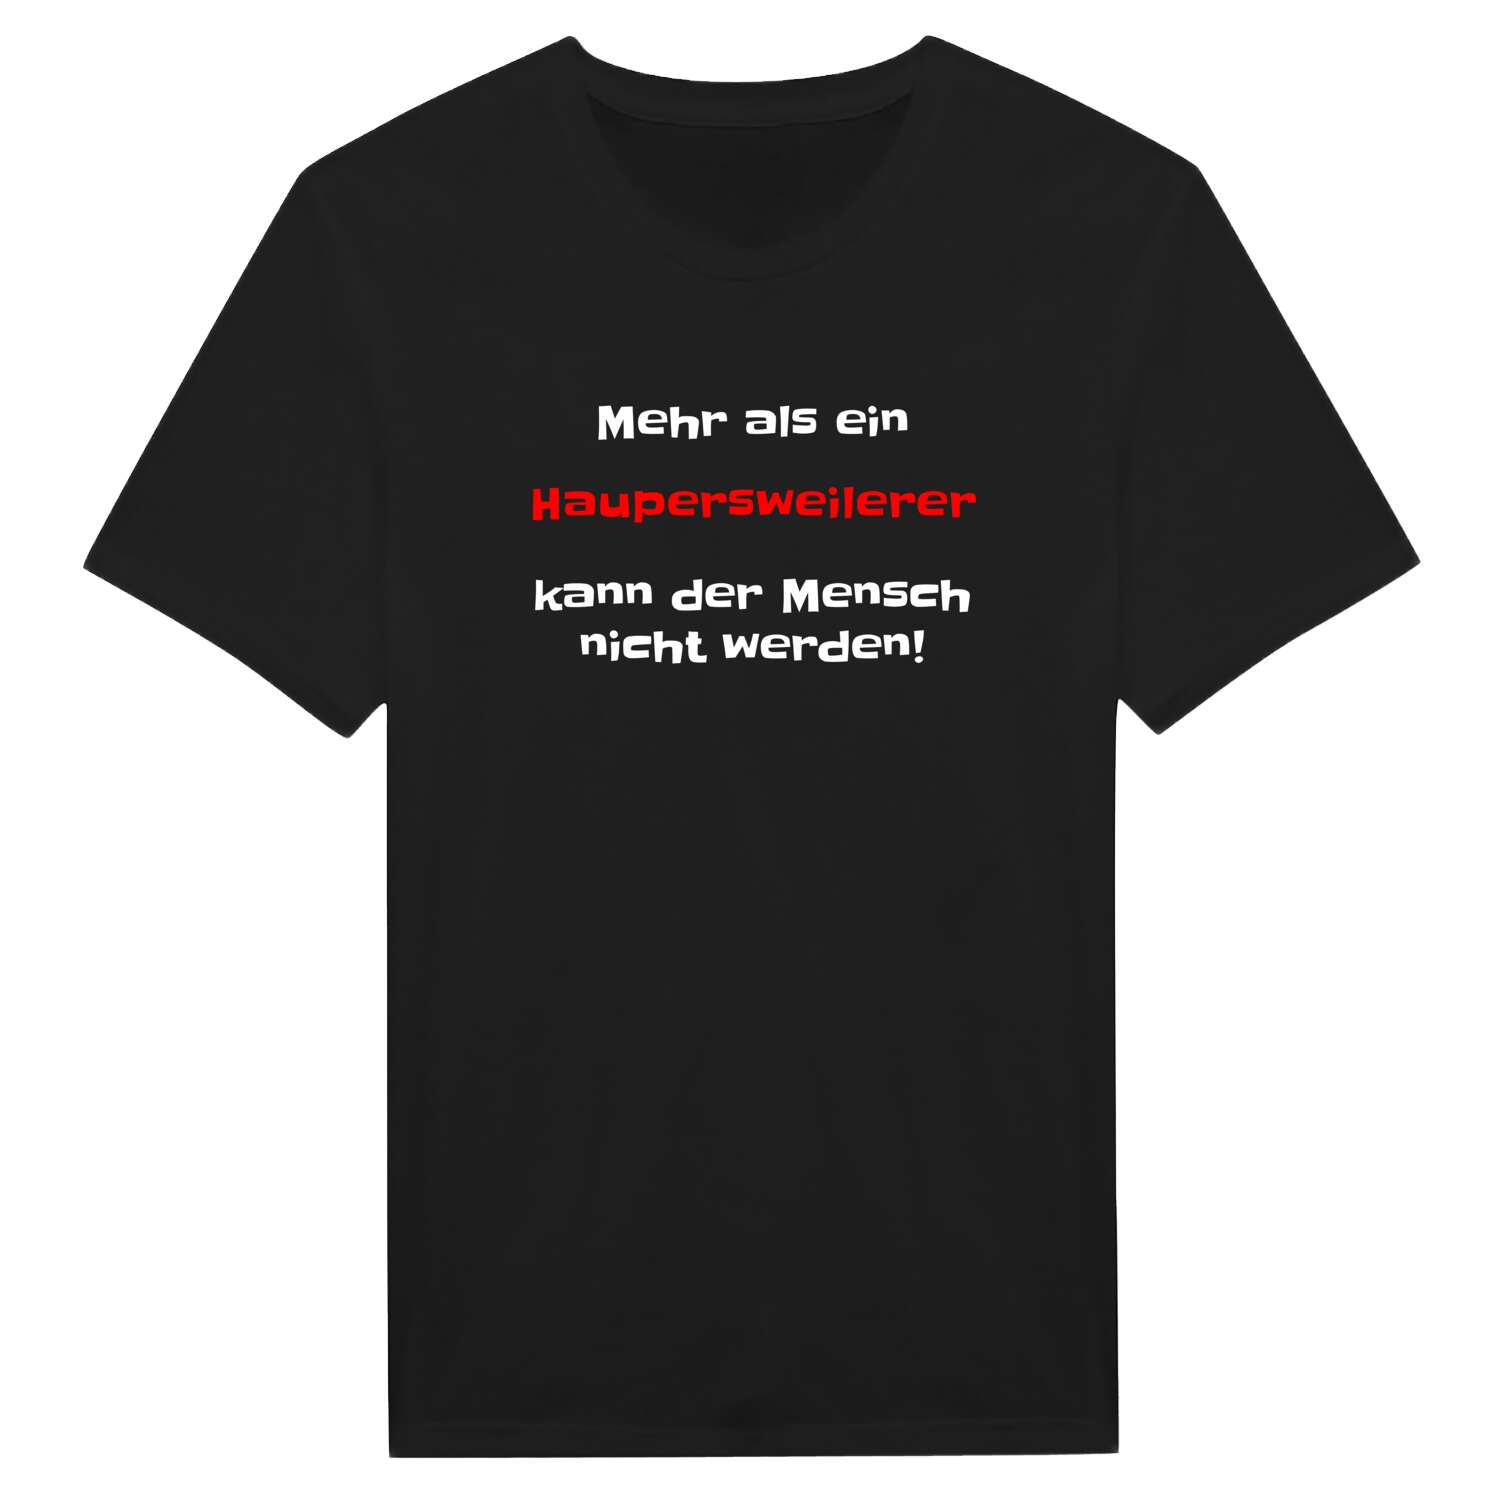 Haupersweiler T-Shirt »Mehr als ein«